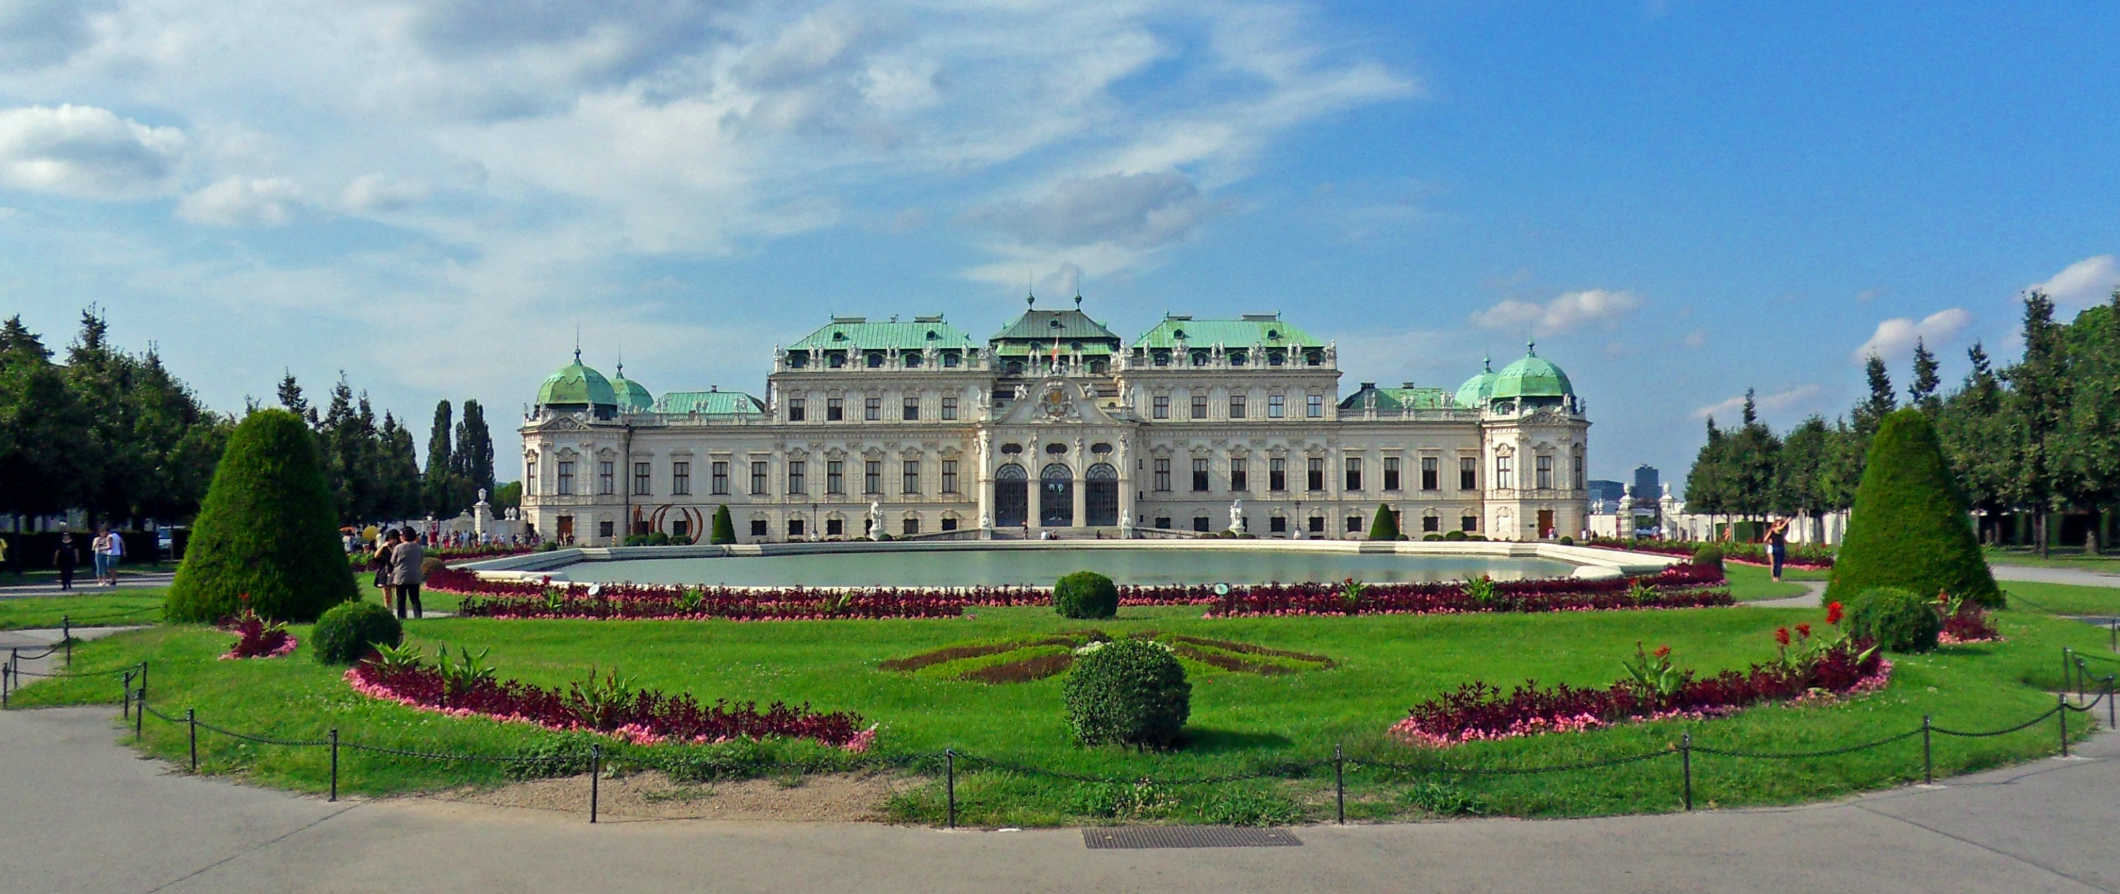 Vista aérea de um dos muitos edifícios históricos de Viena, Áustria